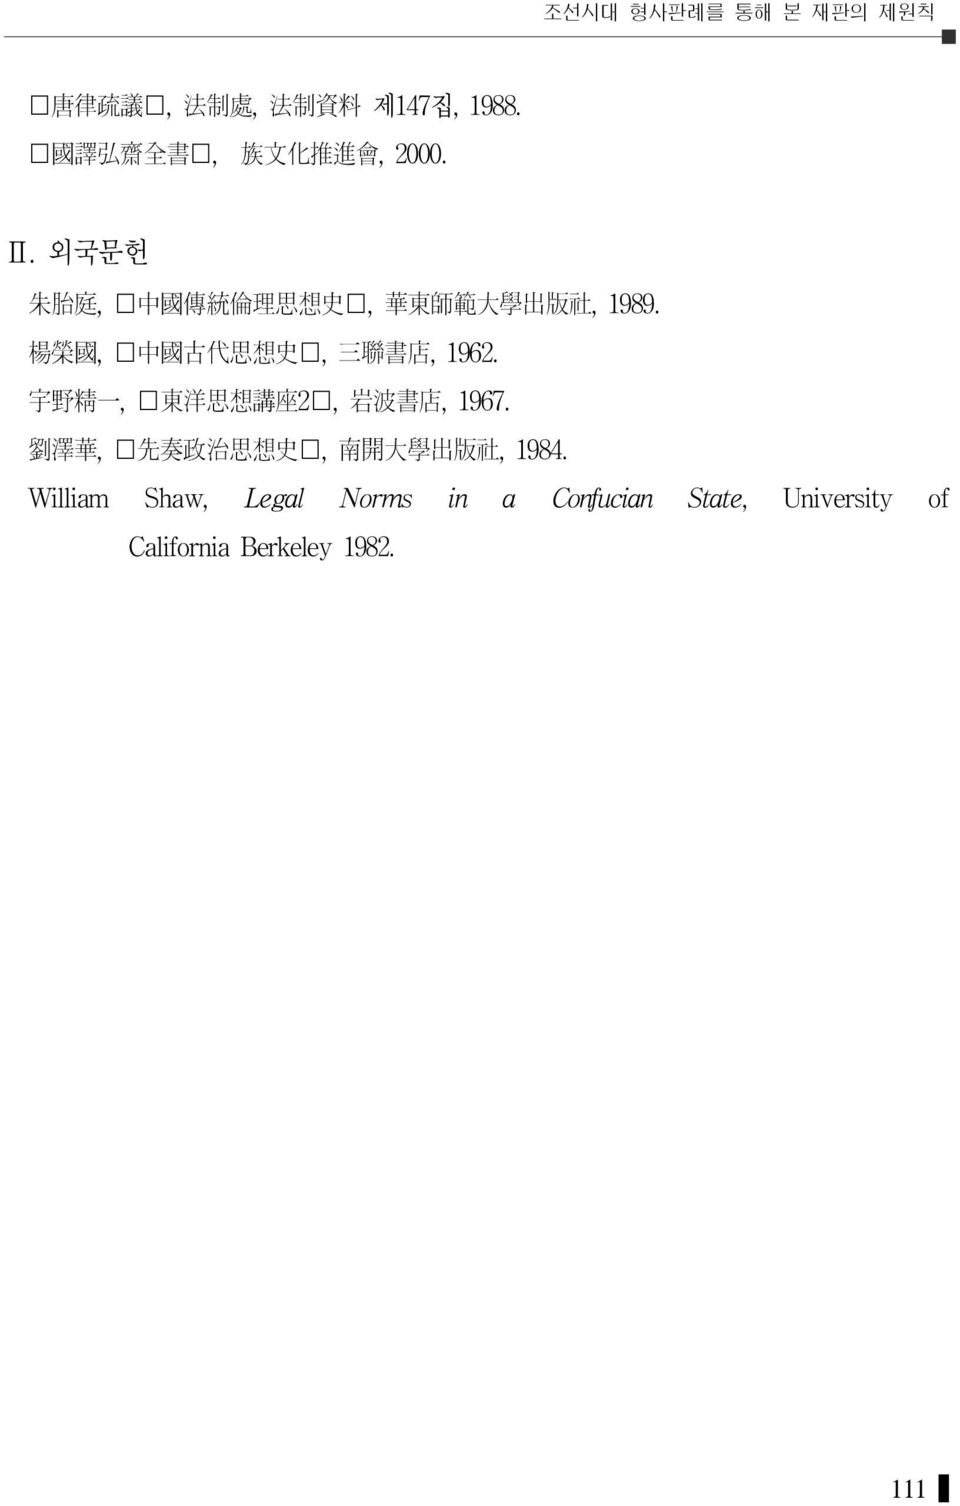 楊 榮 國, 中 國 古 代 思 想 史, 三 聯 書 店, 1962. 宇 野 精 一, 東 洋 思 想 講 座 2, 岩 波 書 店, 1967.